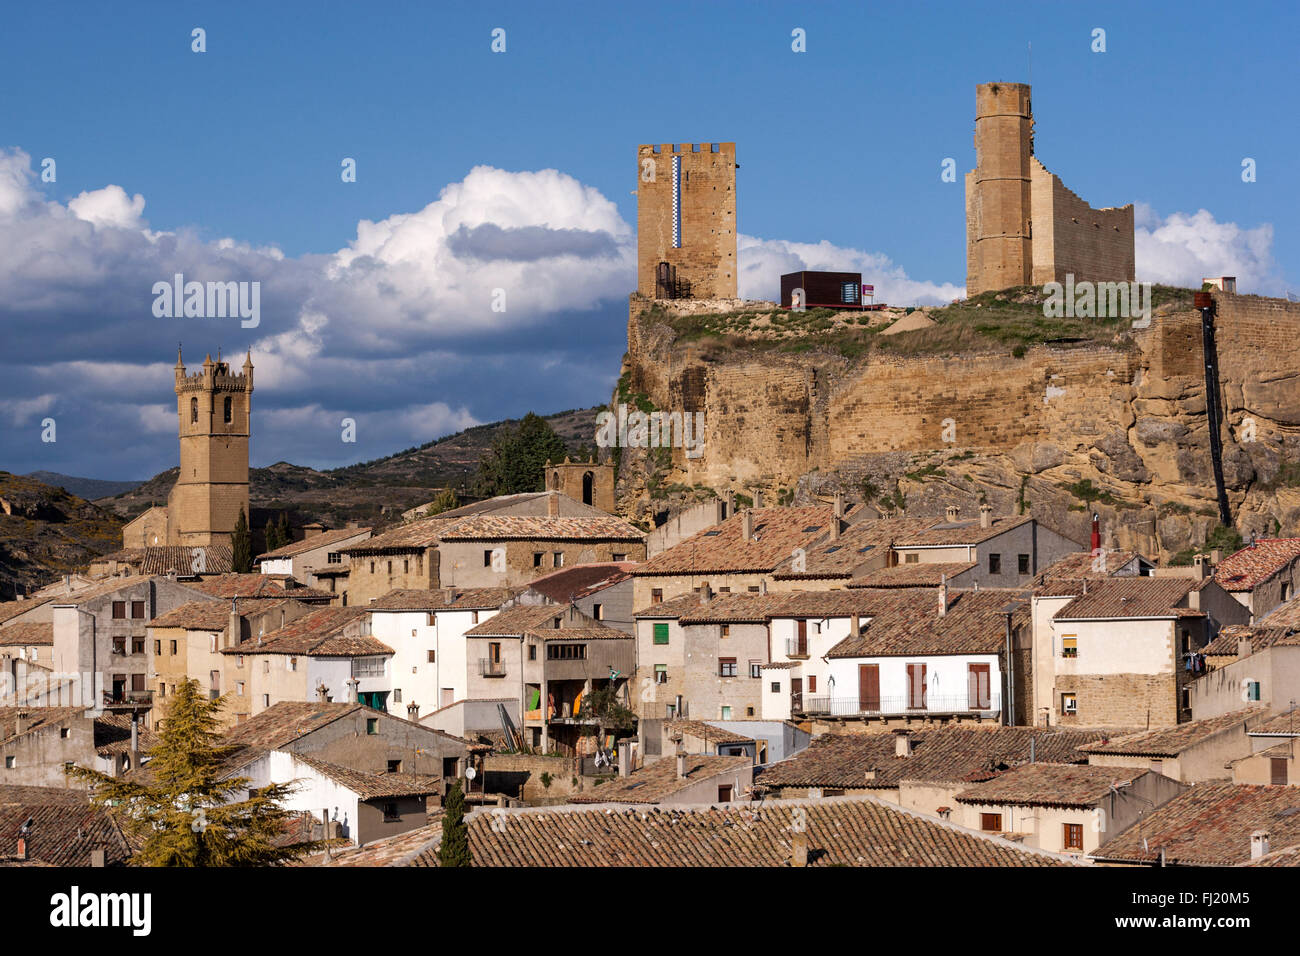 View of Uncastillo and castle, Cinco Villas, Zaragoza Province, Aragon, Spain Stock Photo